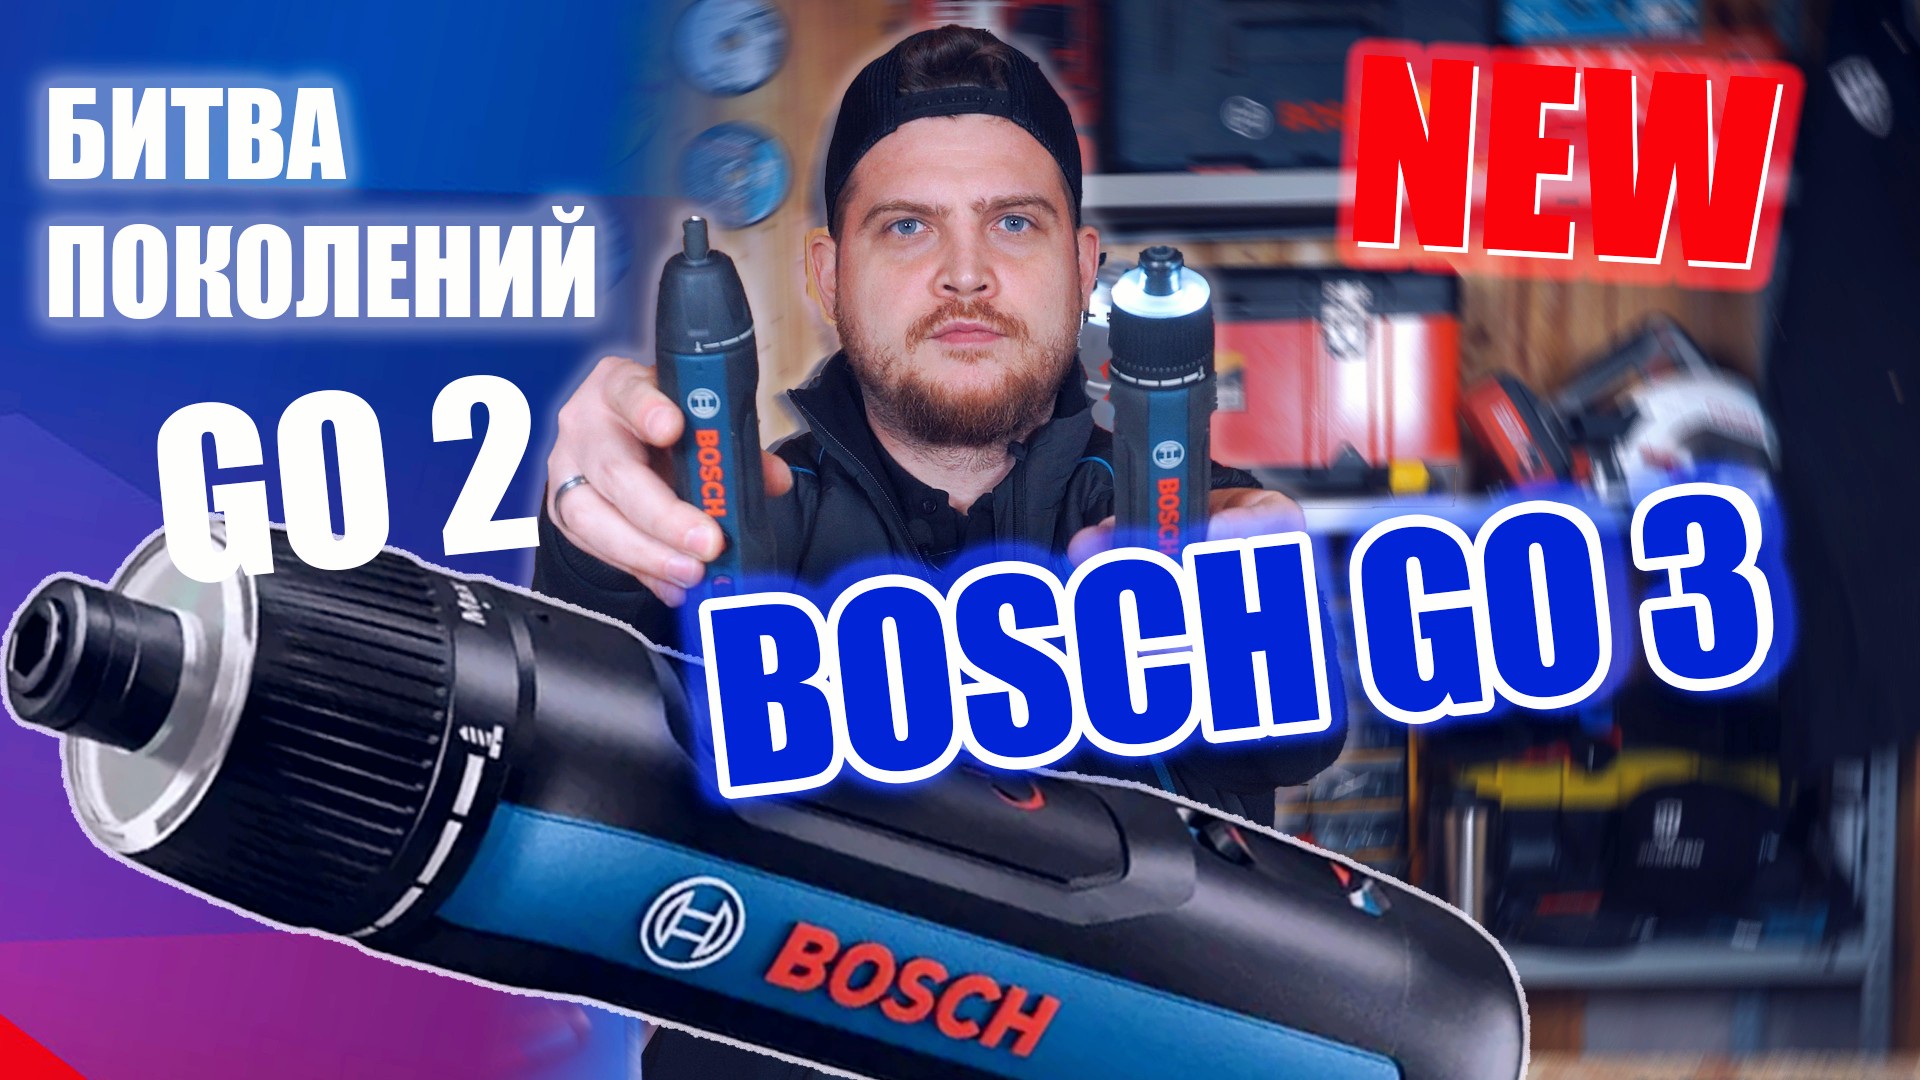 Аккумуляторная Отвертка BOSCH GO 3!  Сравнение с Bosch go 2 - Первый обзор в ЕВРОПЕ!